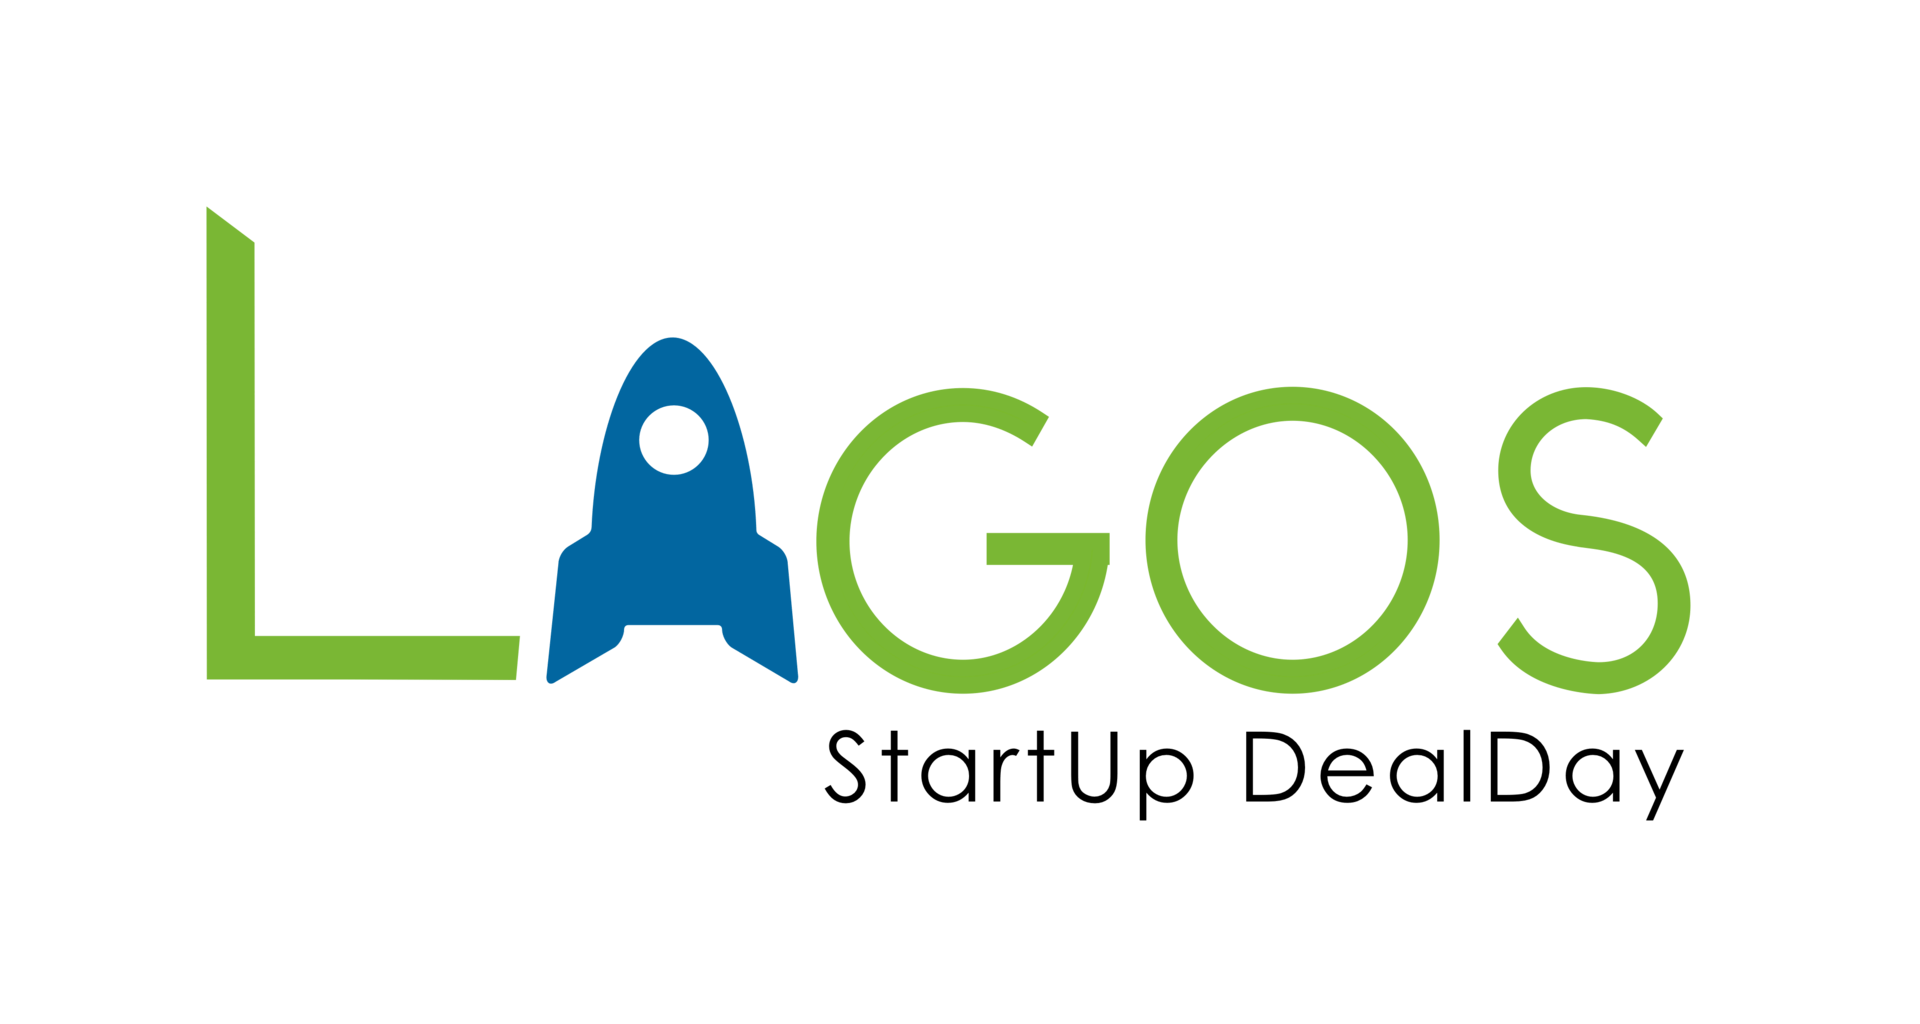 Lagos Startup Dealday, LAN